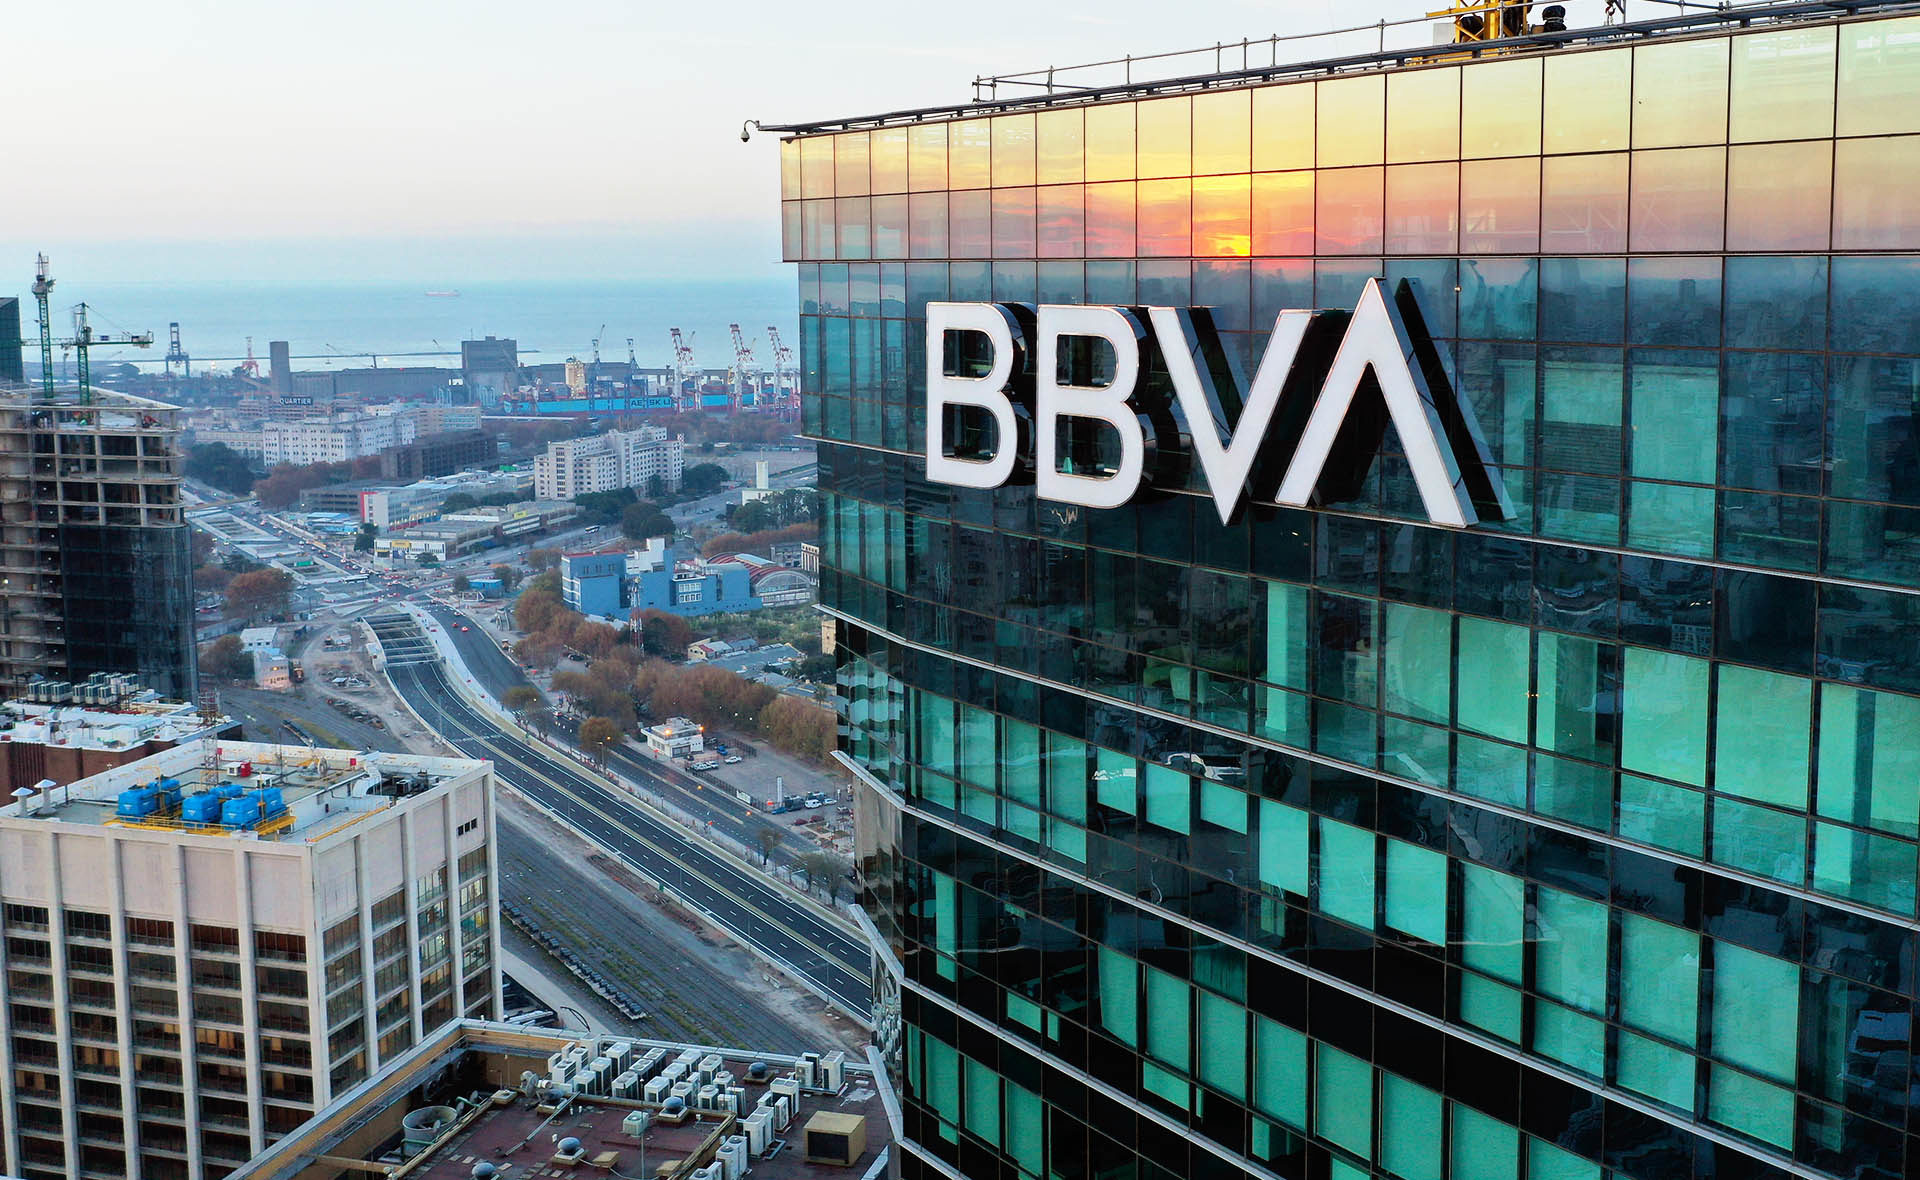 Nueva marca BBVA presentación en Argentina